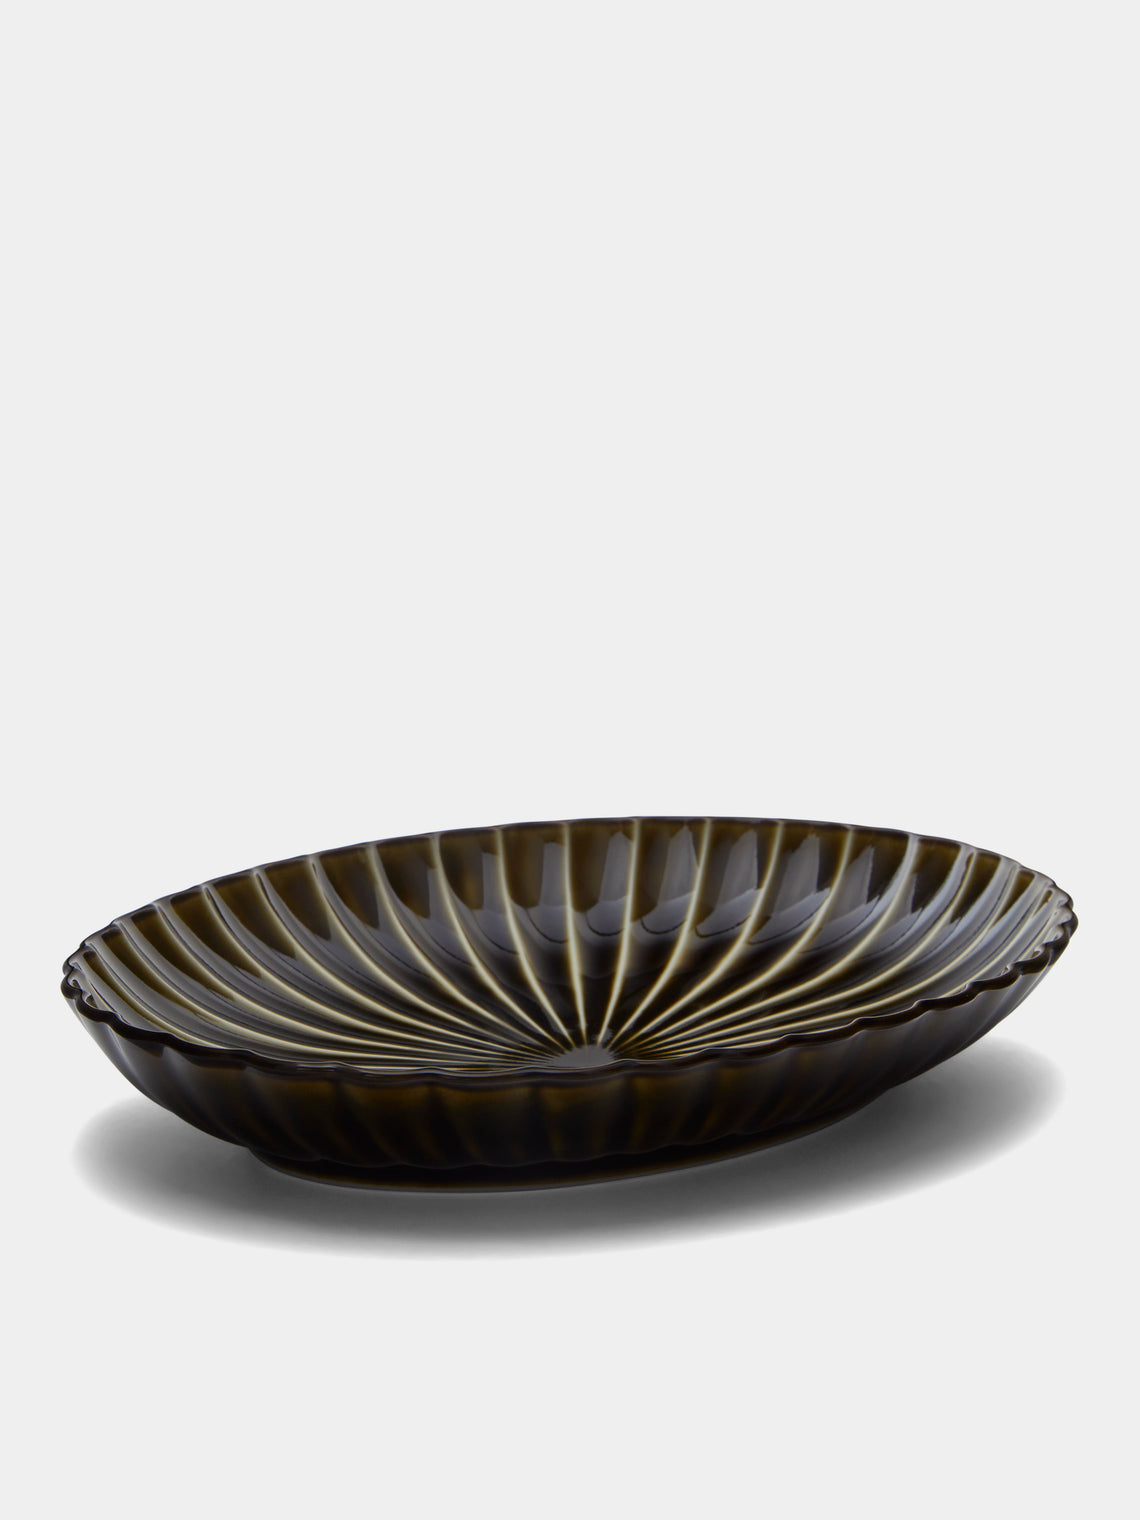 Kaneko Kohyo - Giyaman Urushi Ceramic Oval Platter - Green - ABASK